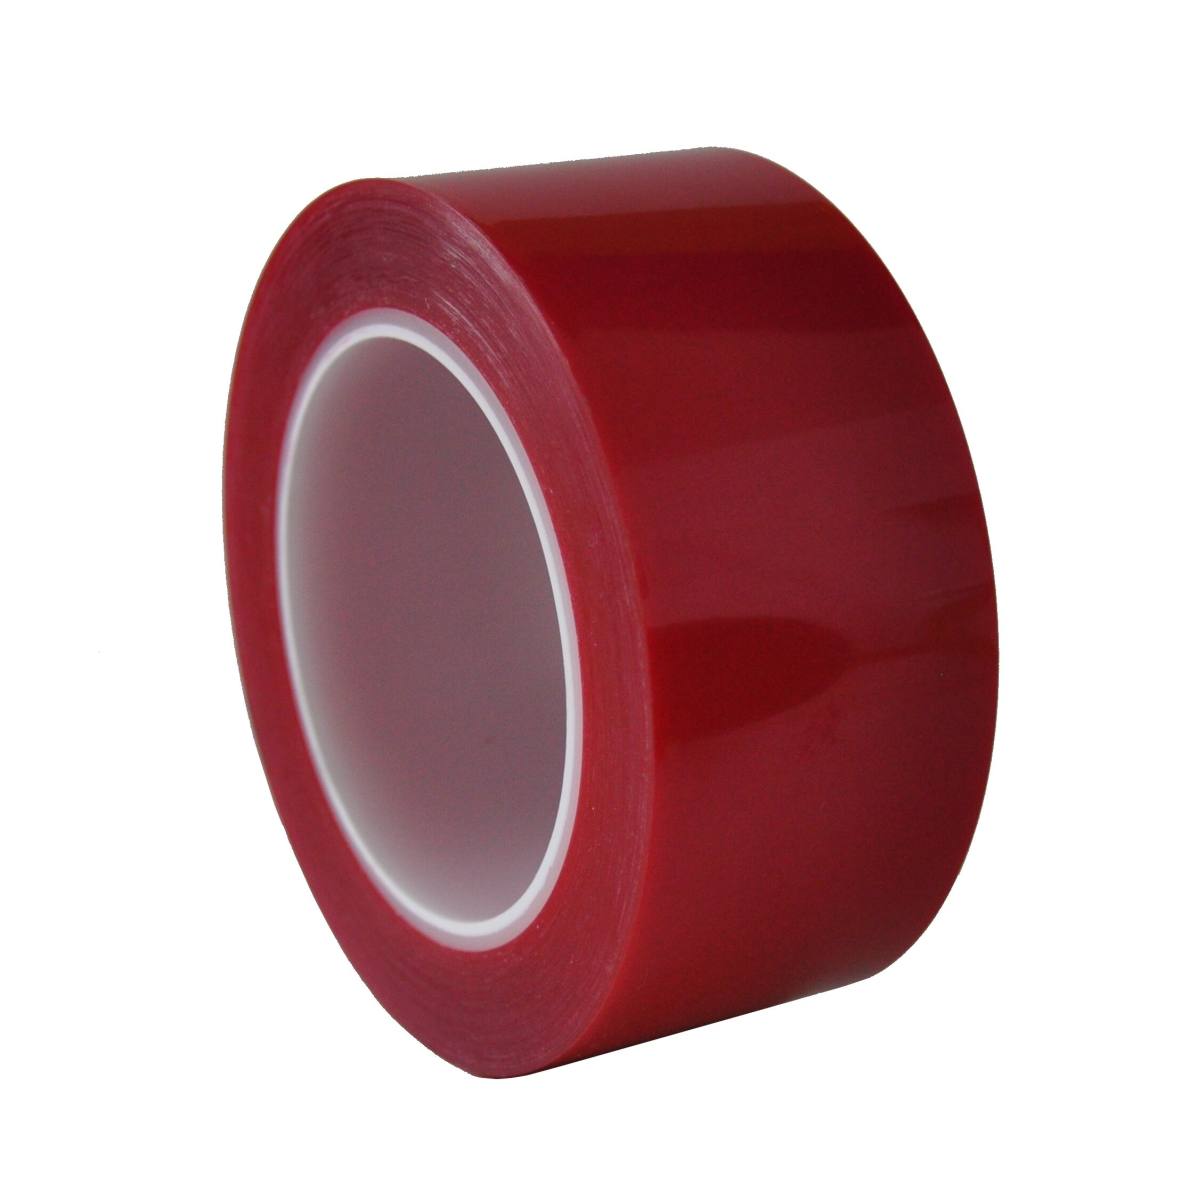 S-K-S 208R nastro adesivo in poliestere, 12mmx66m, rosso